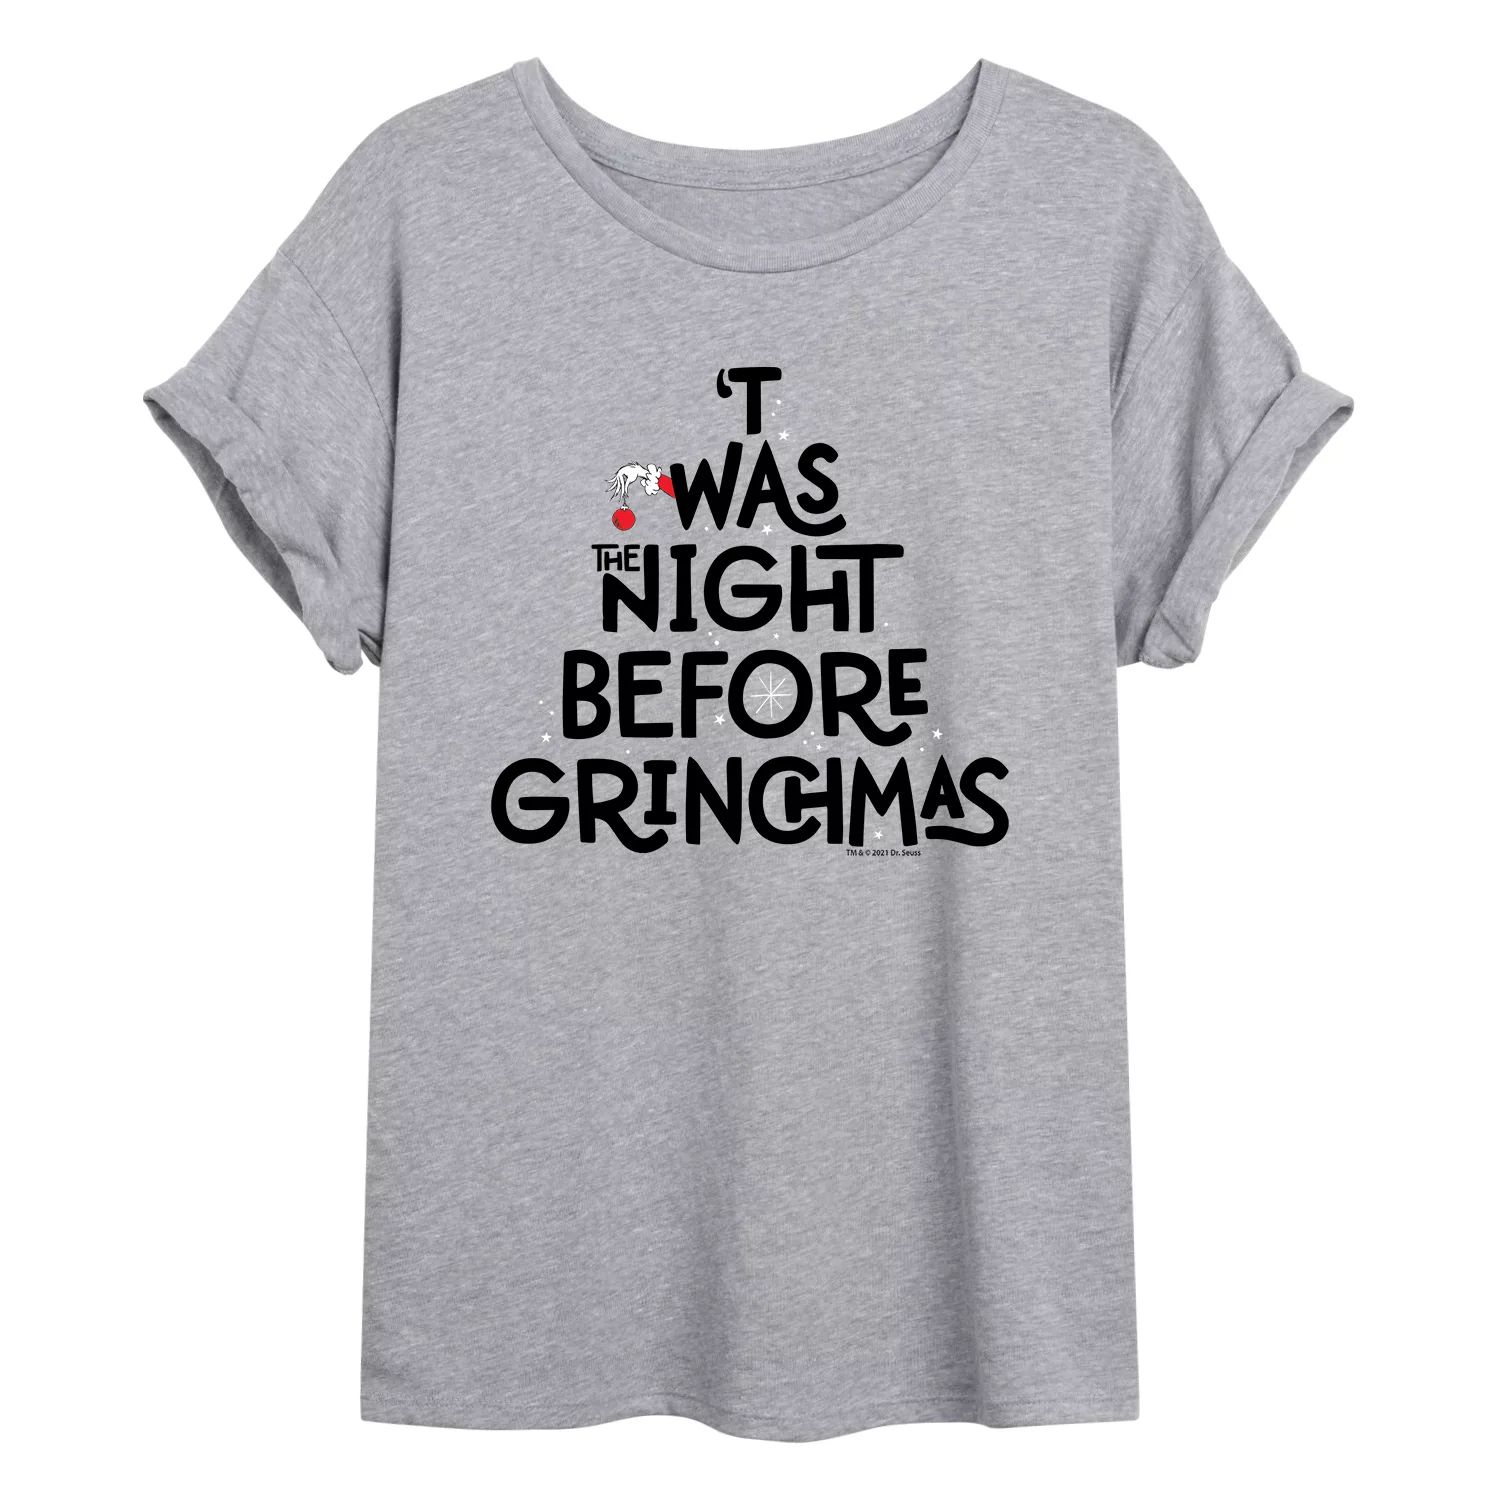 Размерная футболка с рисунком «Доктор Сьюз» для юниоров «Ночь перед Гринчмасом» Licensed Character фото